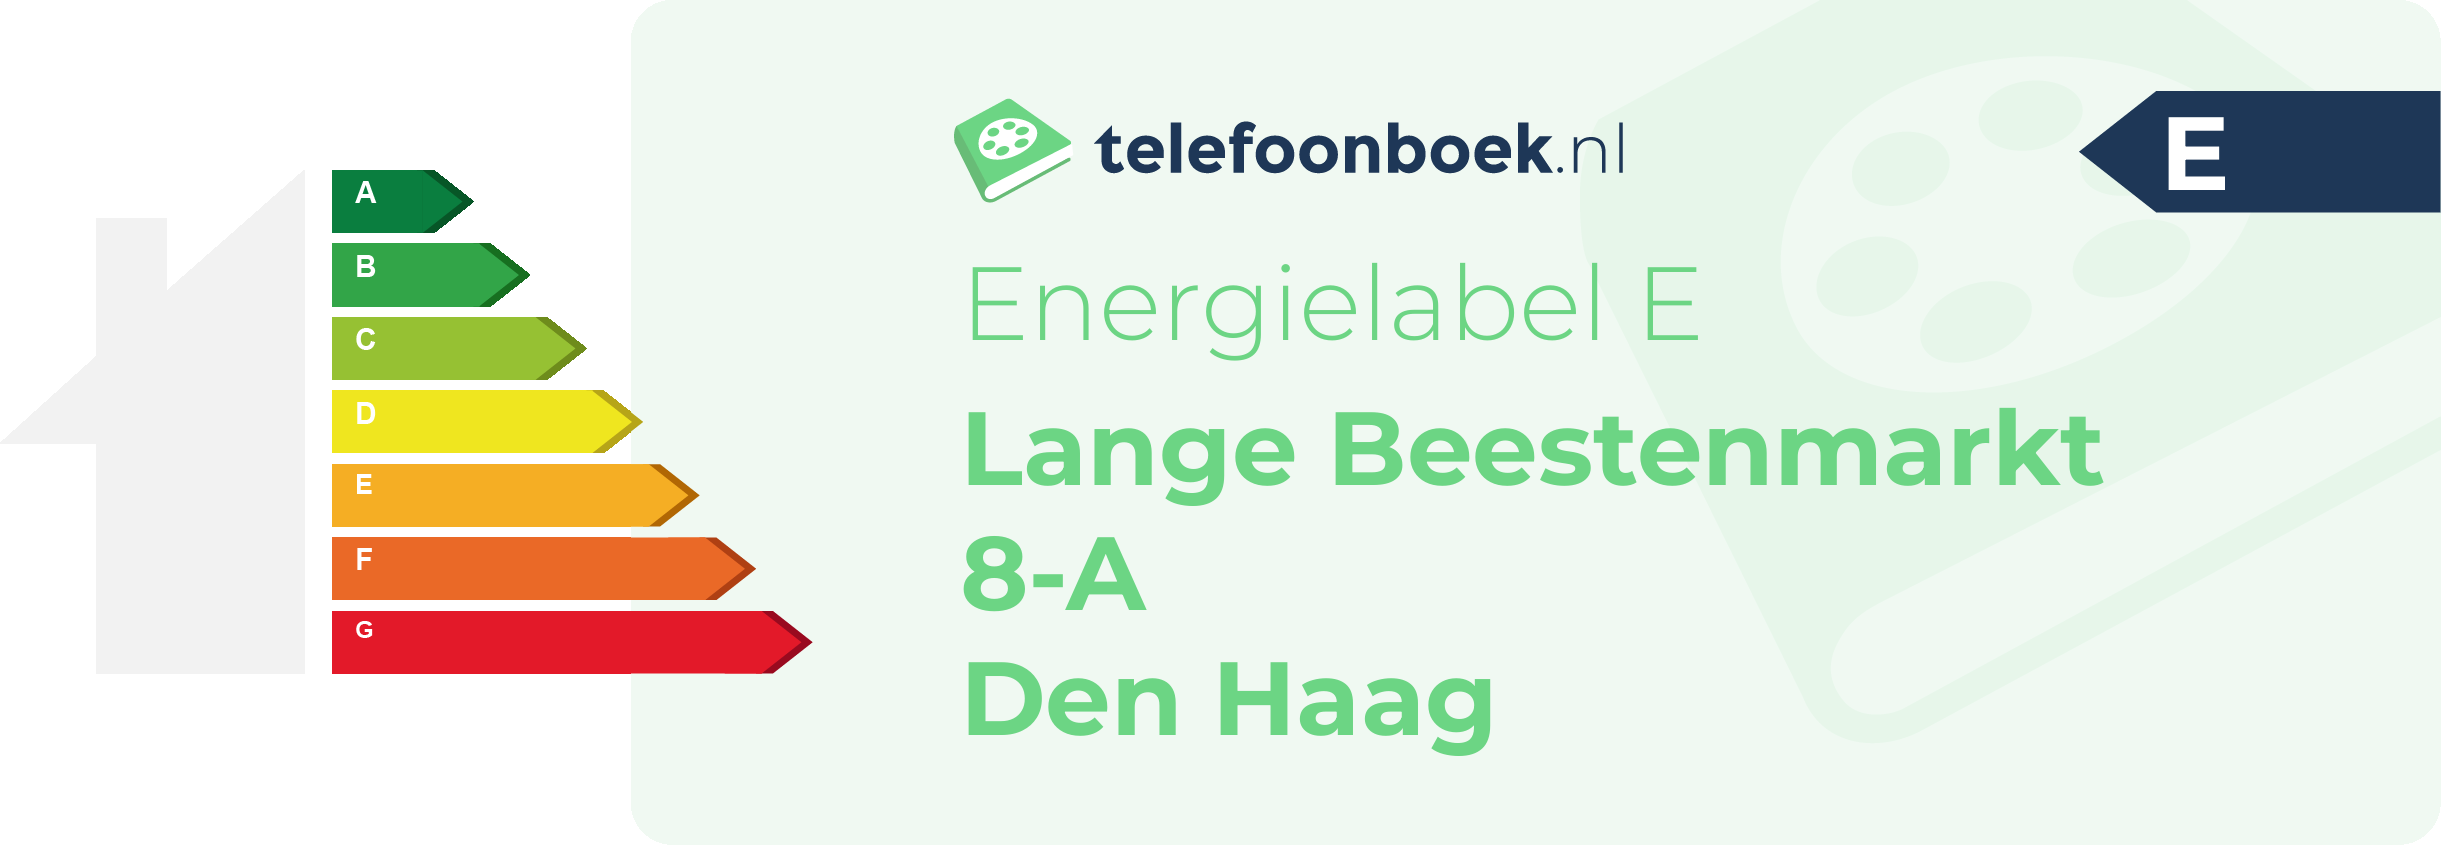 Energielabel Lange Beestenmarkt 8-A Den Haag